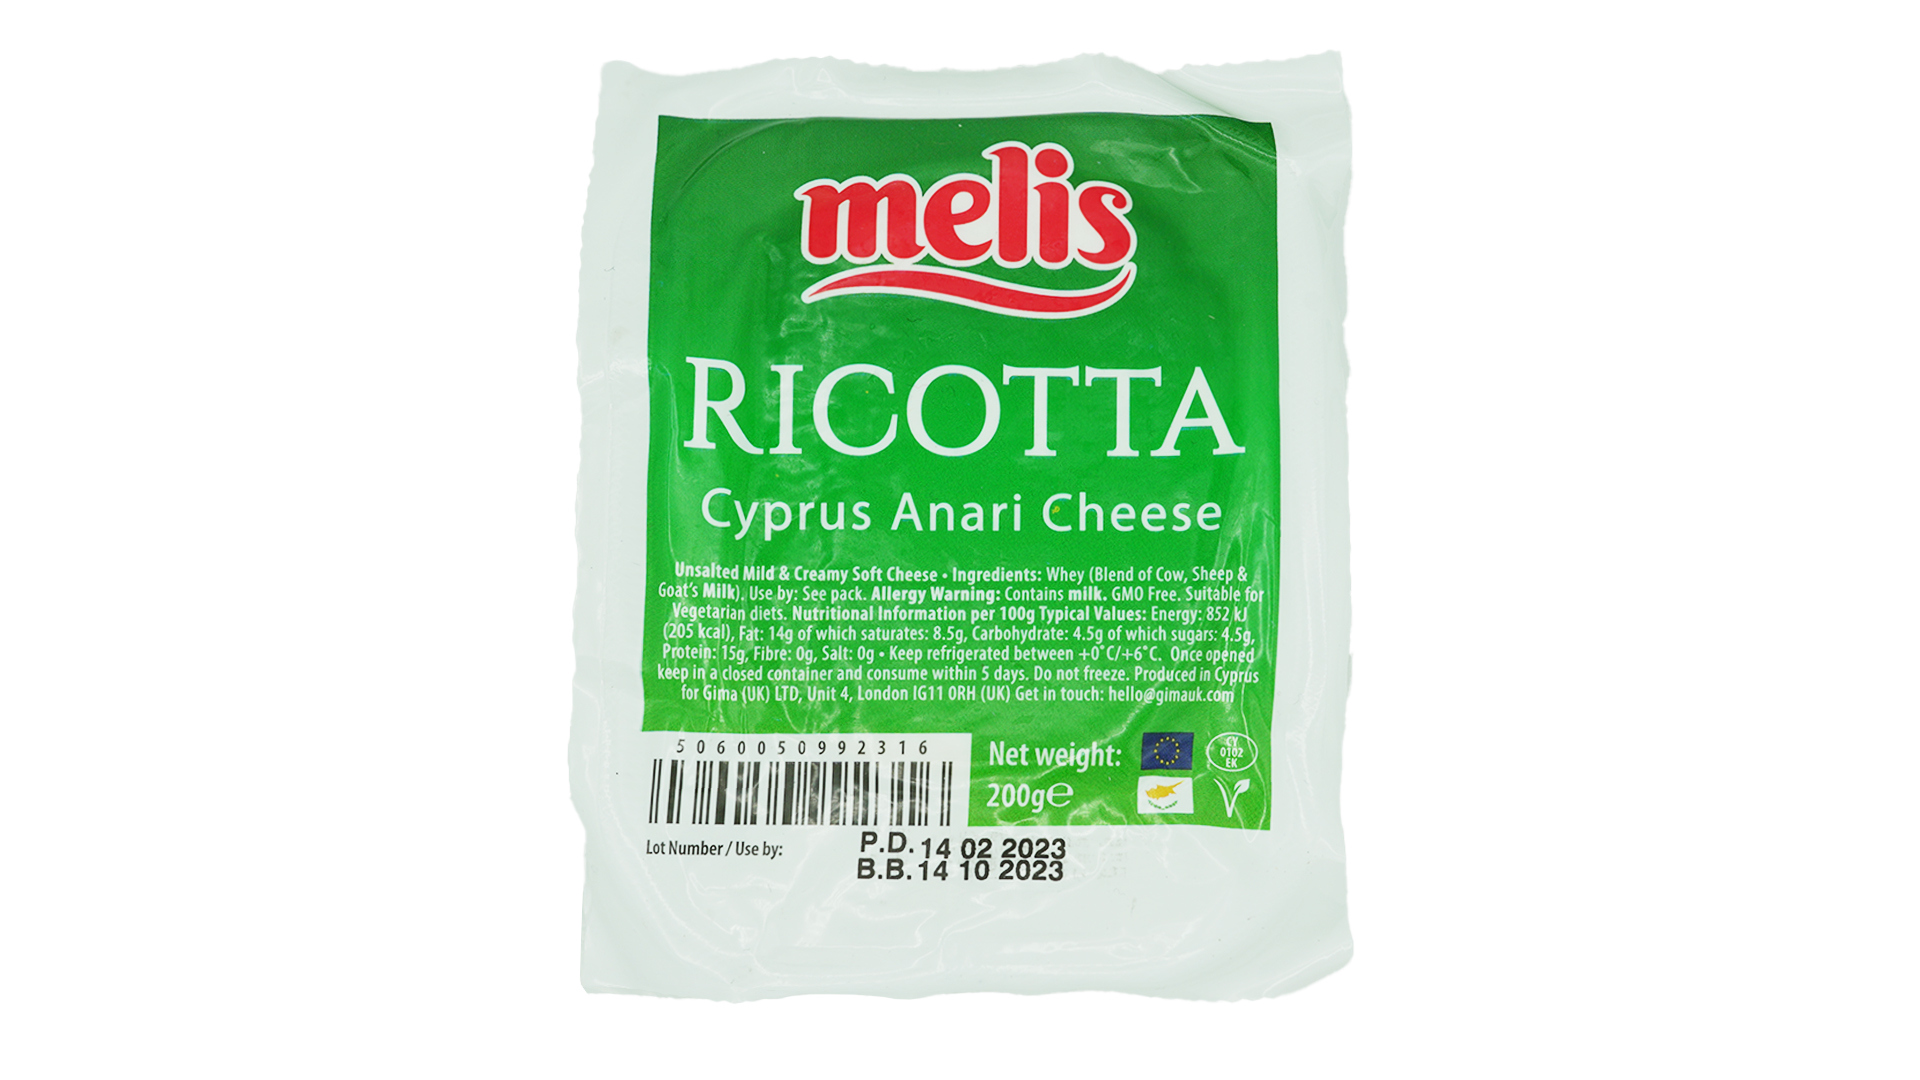 Melis ricotta cyprus anari cheese 200g 1